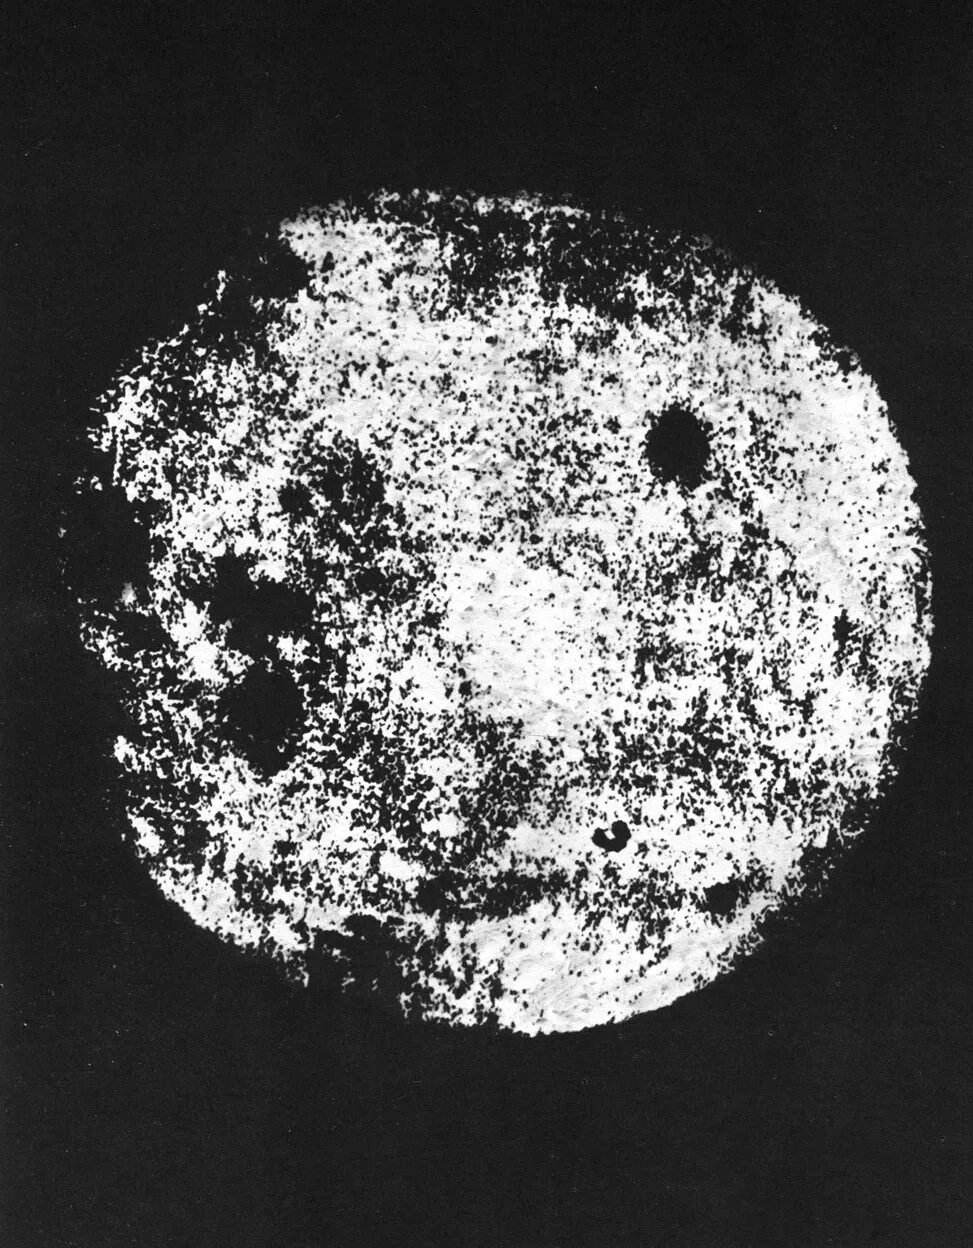 Обратная сторона Луны 1959. Снимки Луны 1959. Луна 3 снимки обратной стороны Луны. Снимок обратной стороны Луны 1959.